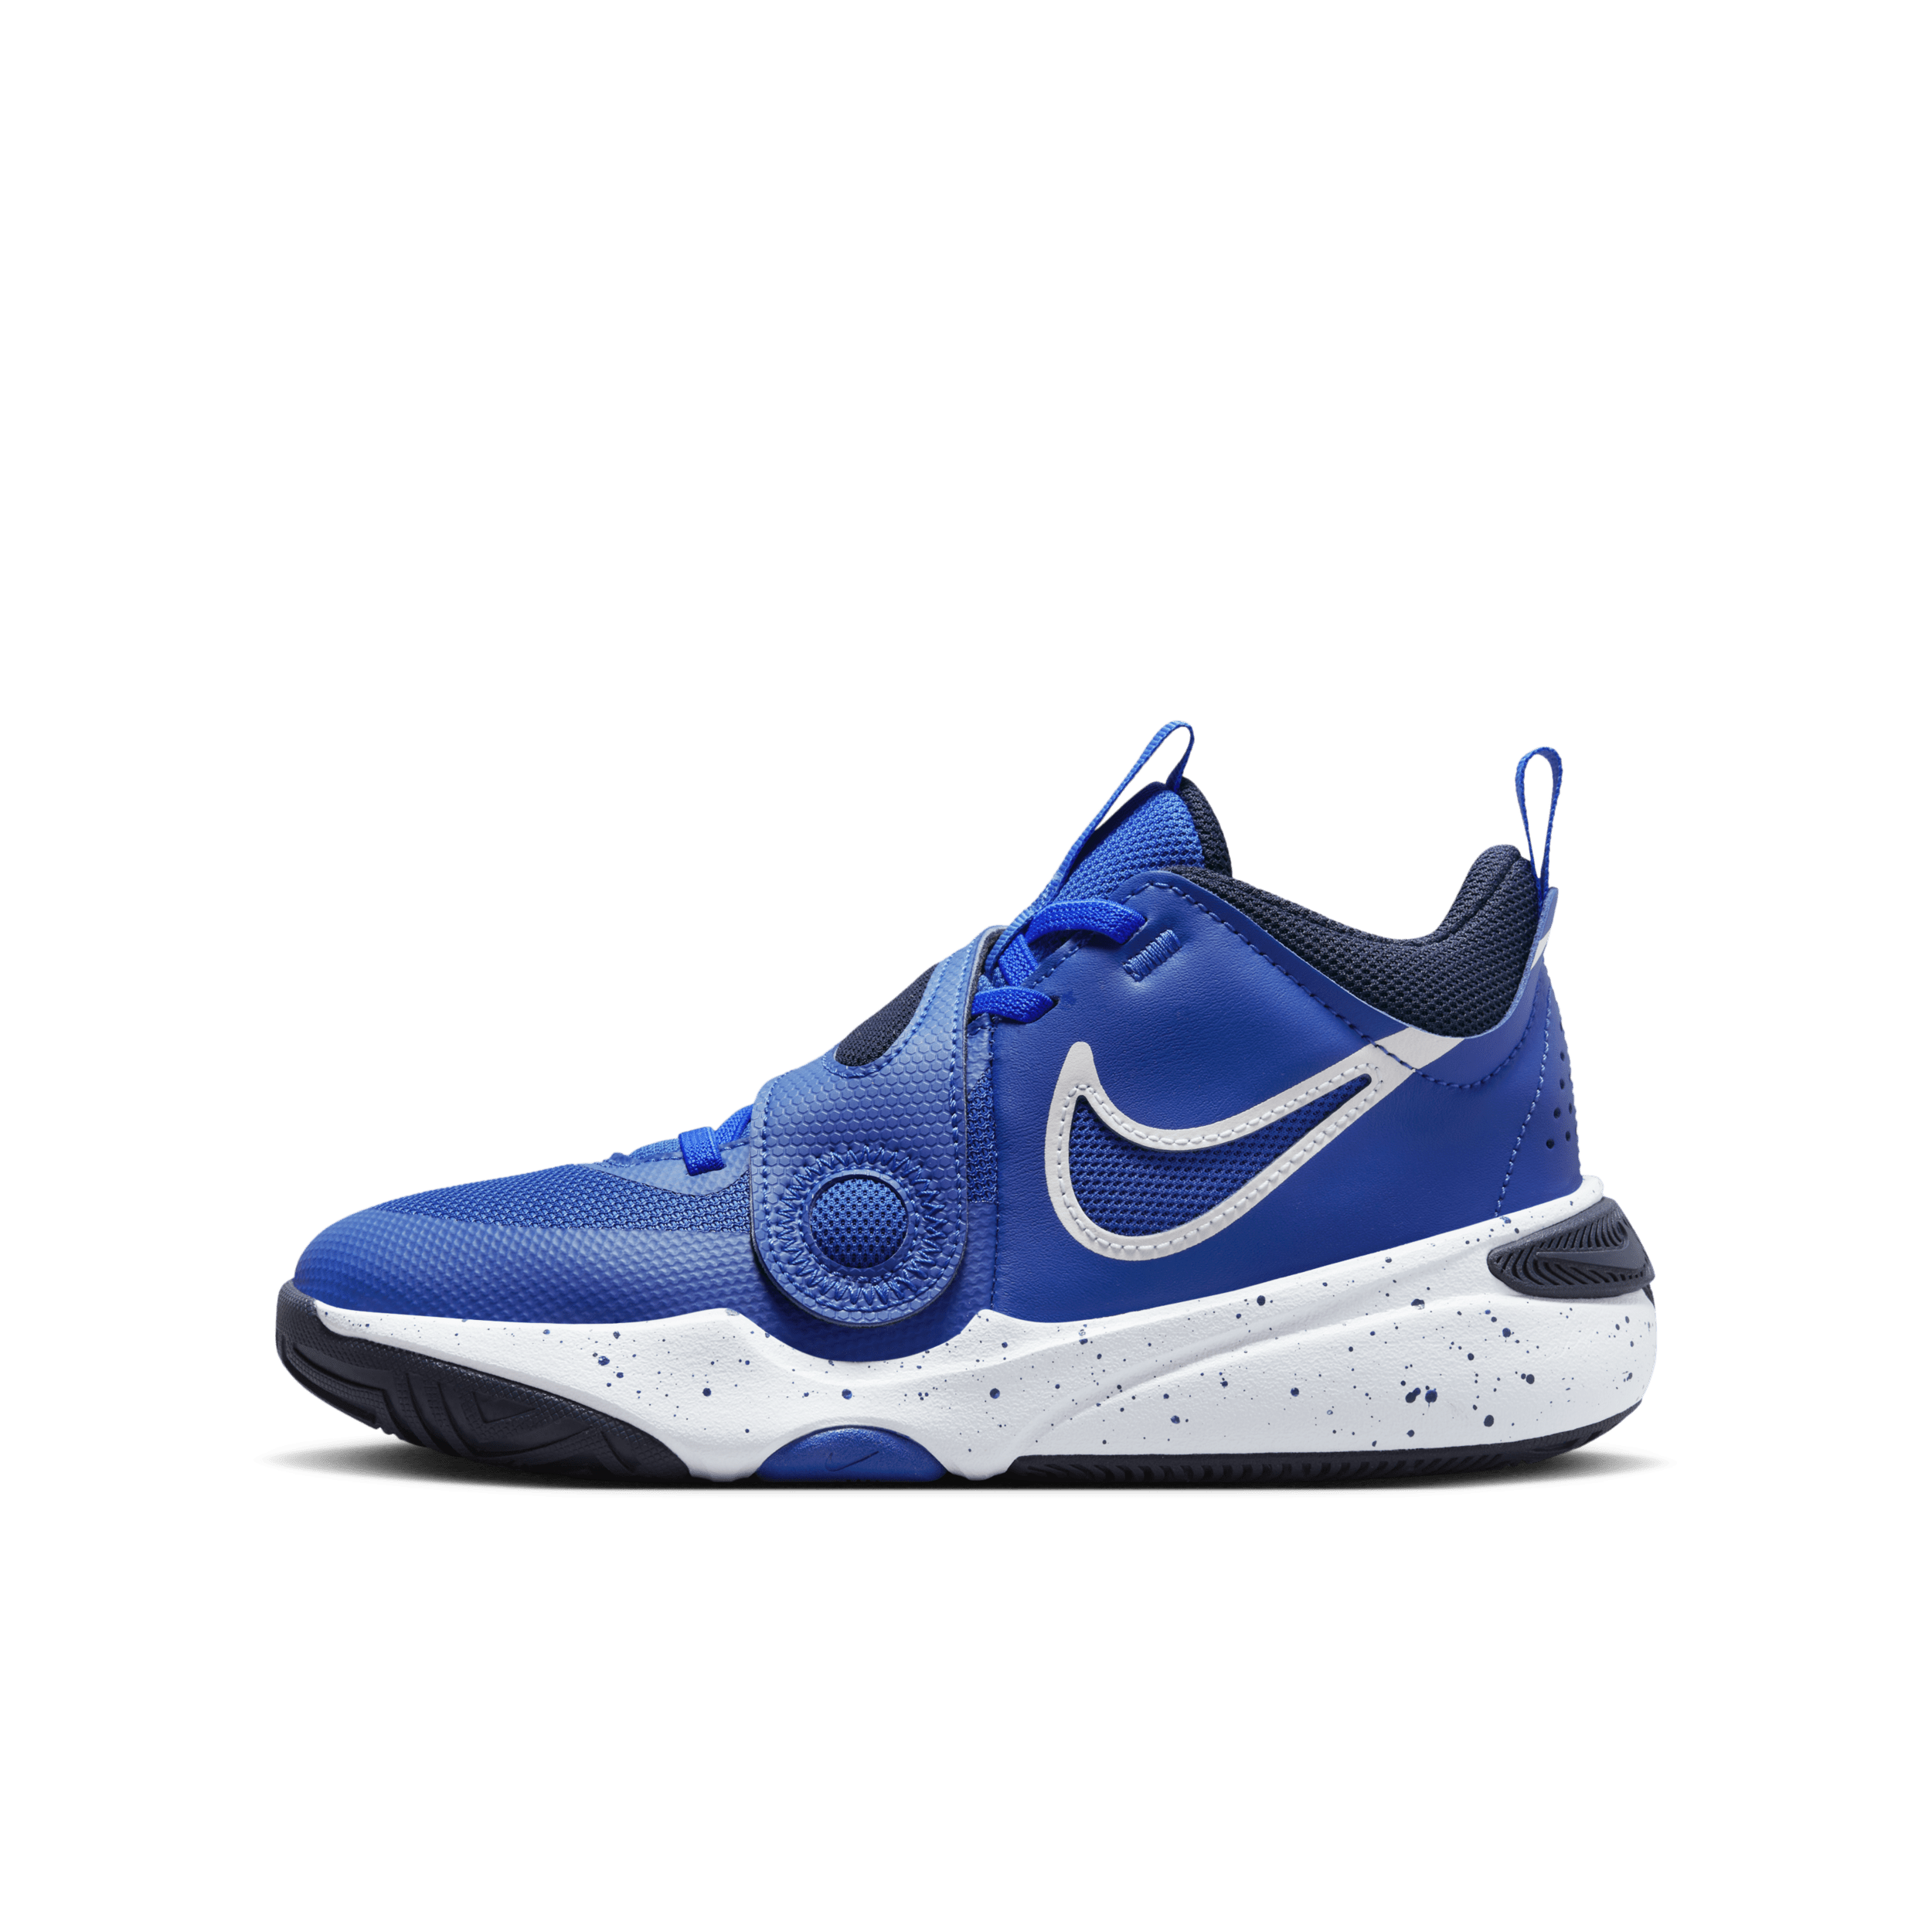 Nike Team Hustle D 11 Basketbalschoenen voor kids - Blauw